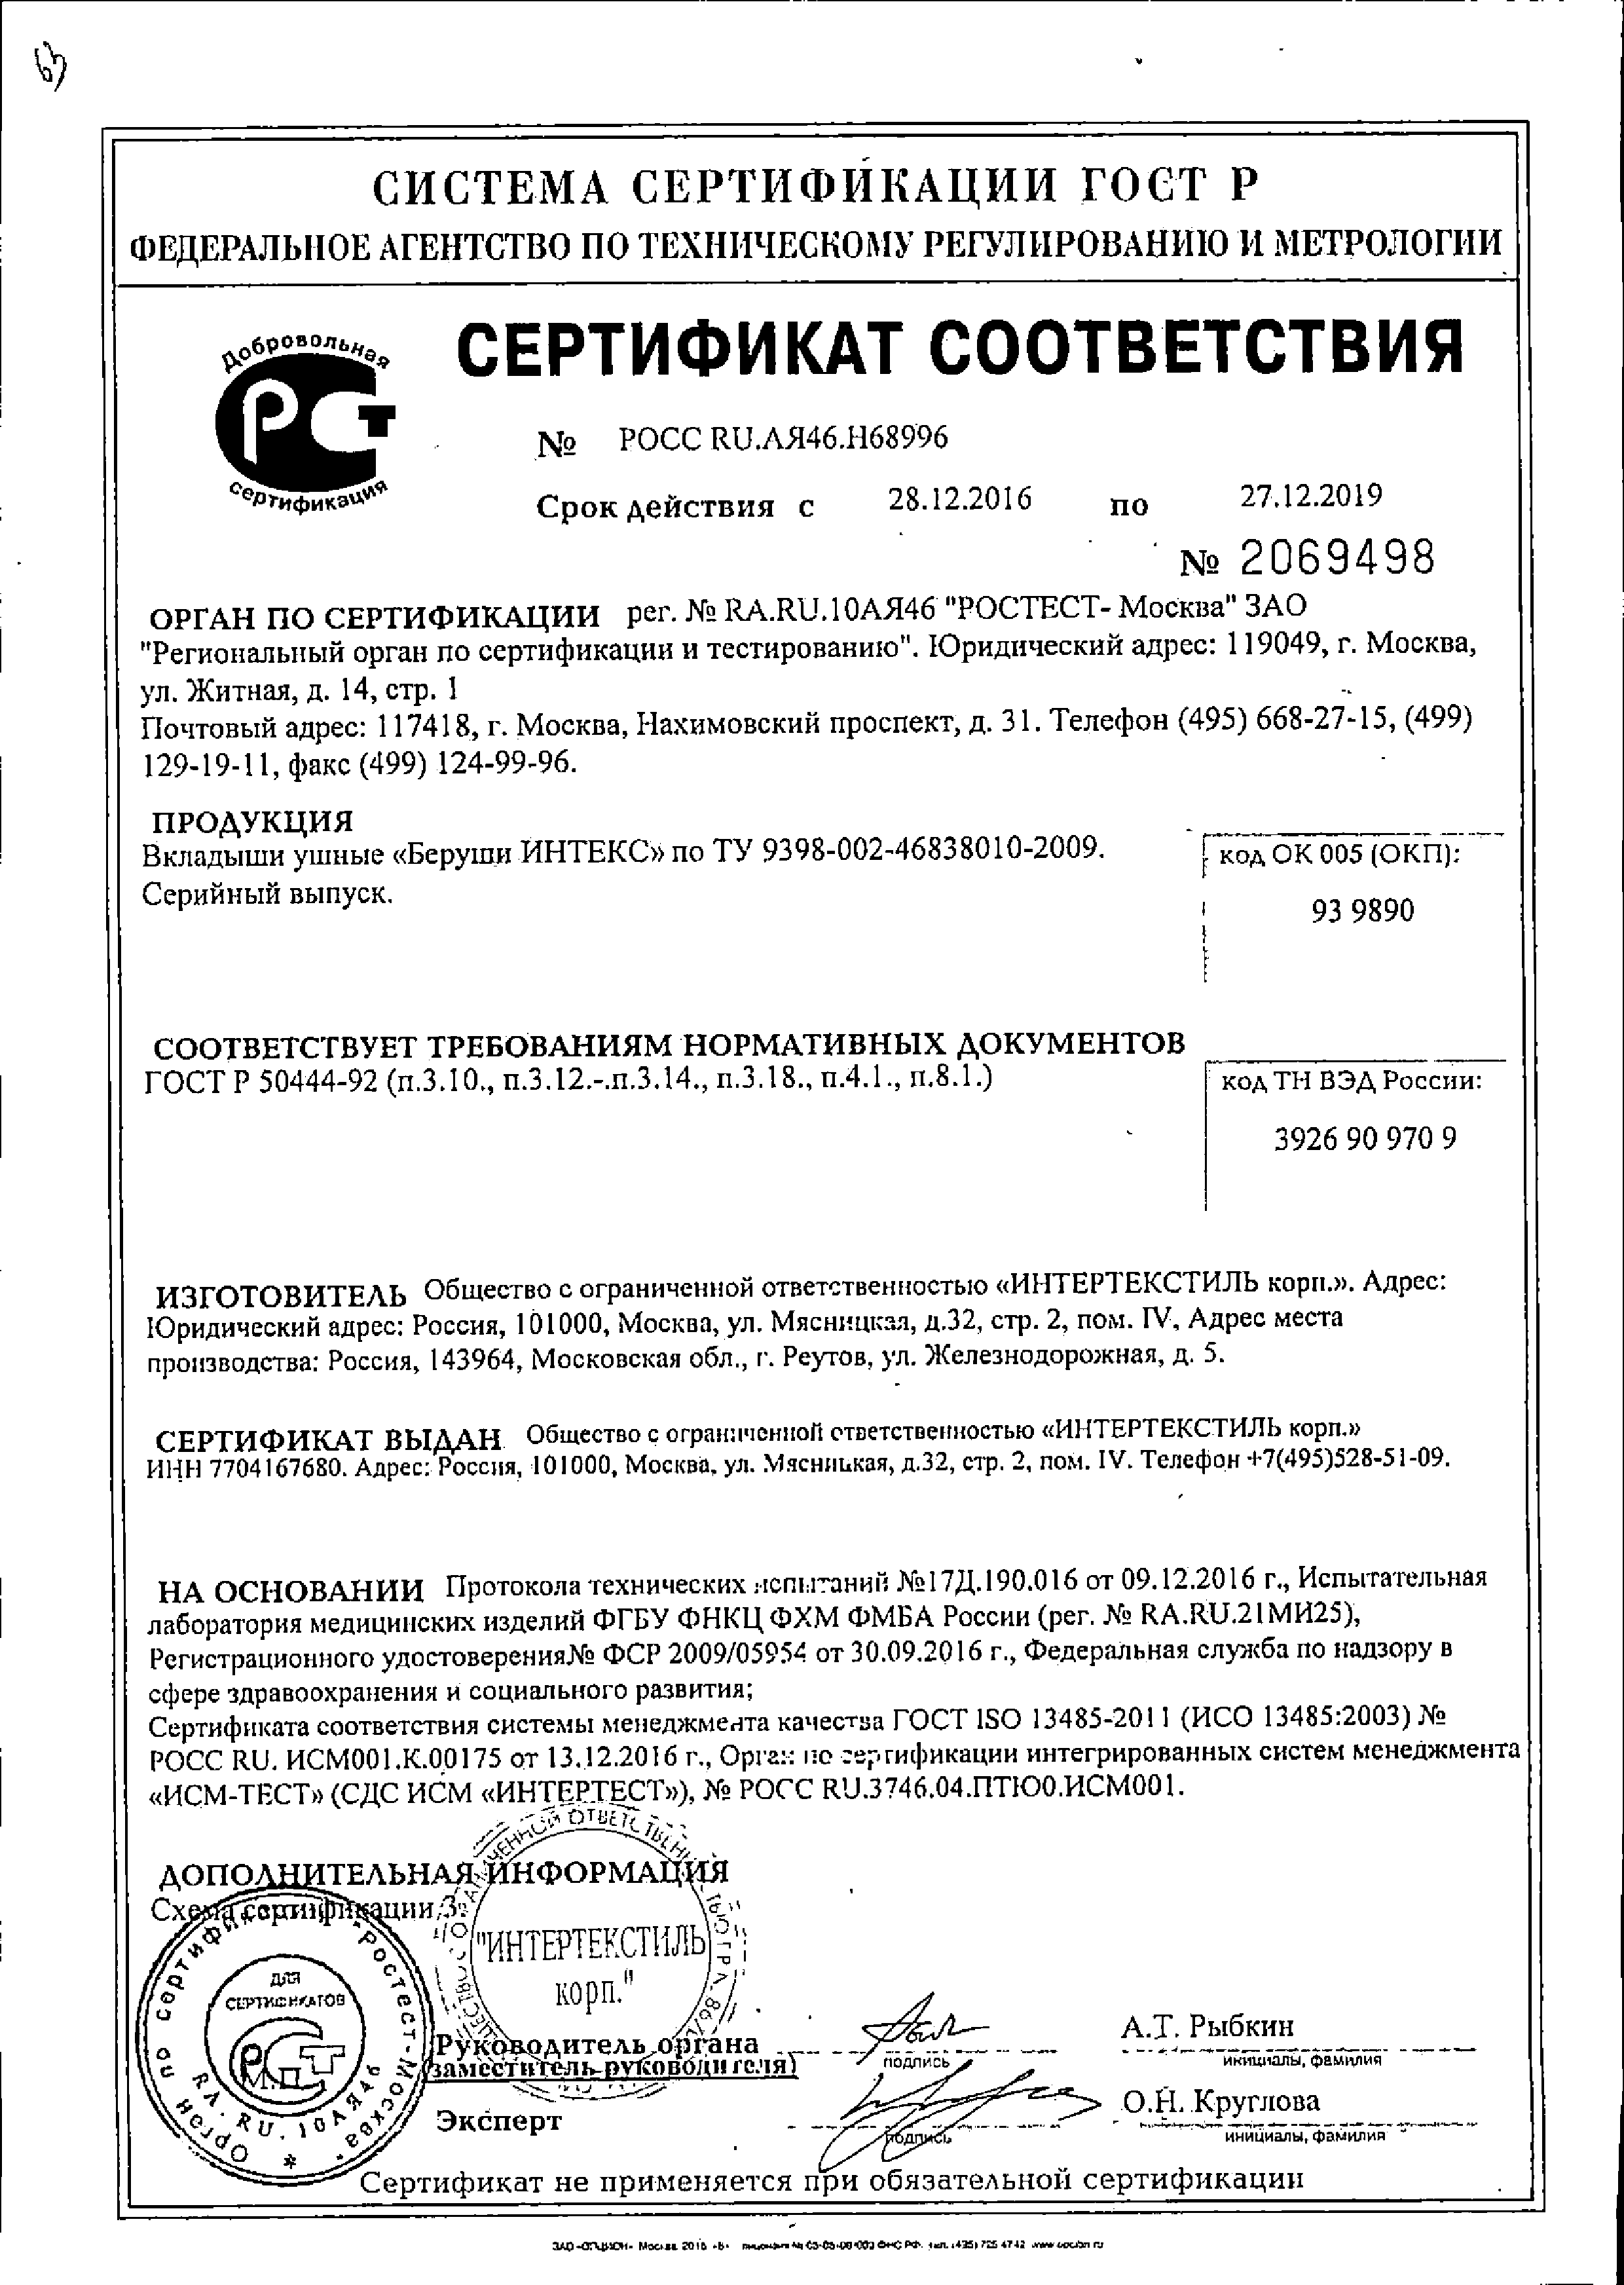 Клинса вкладыши ушные - беруши Интекс сертификат